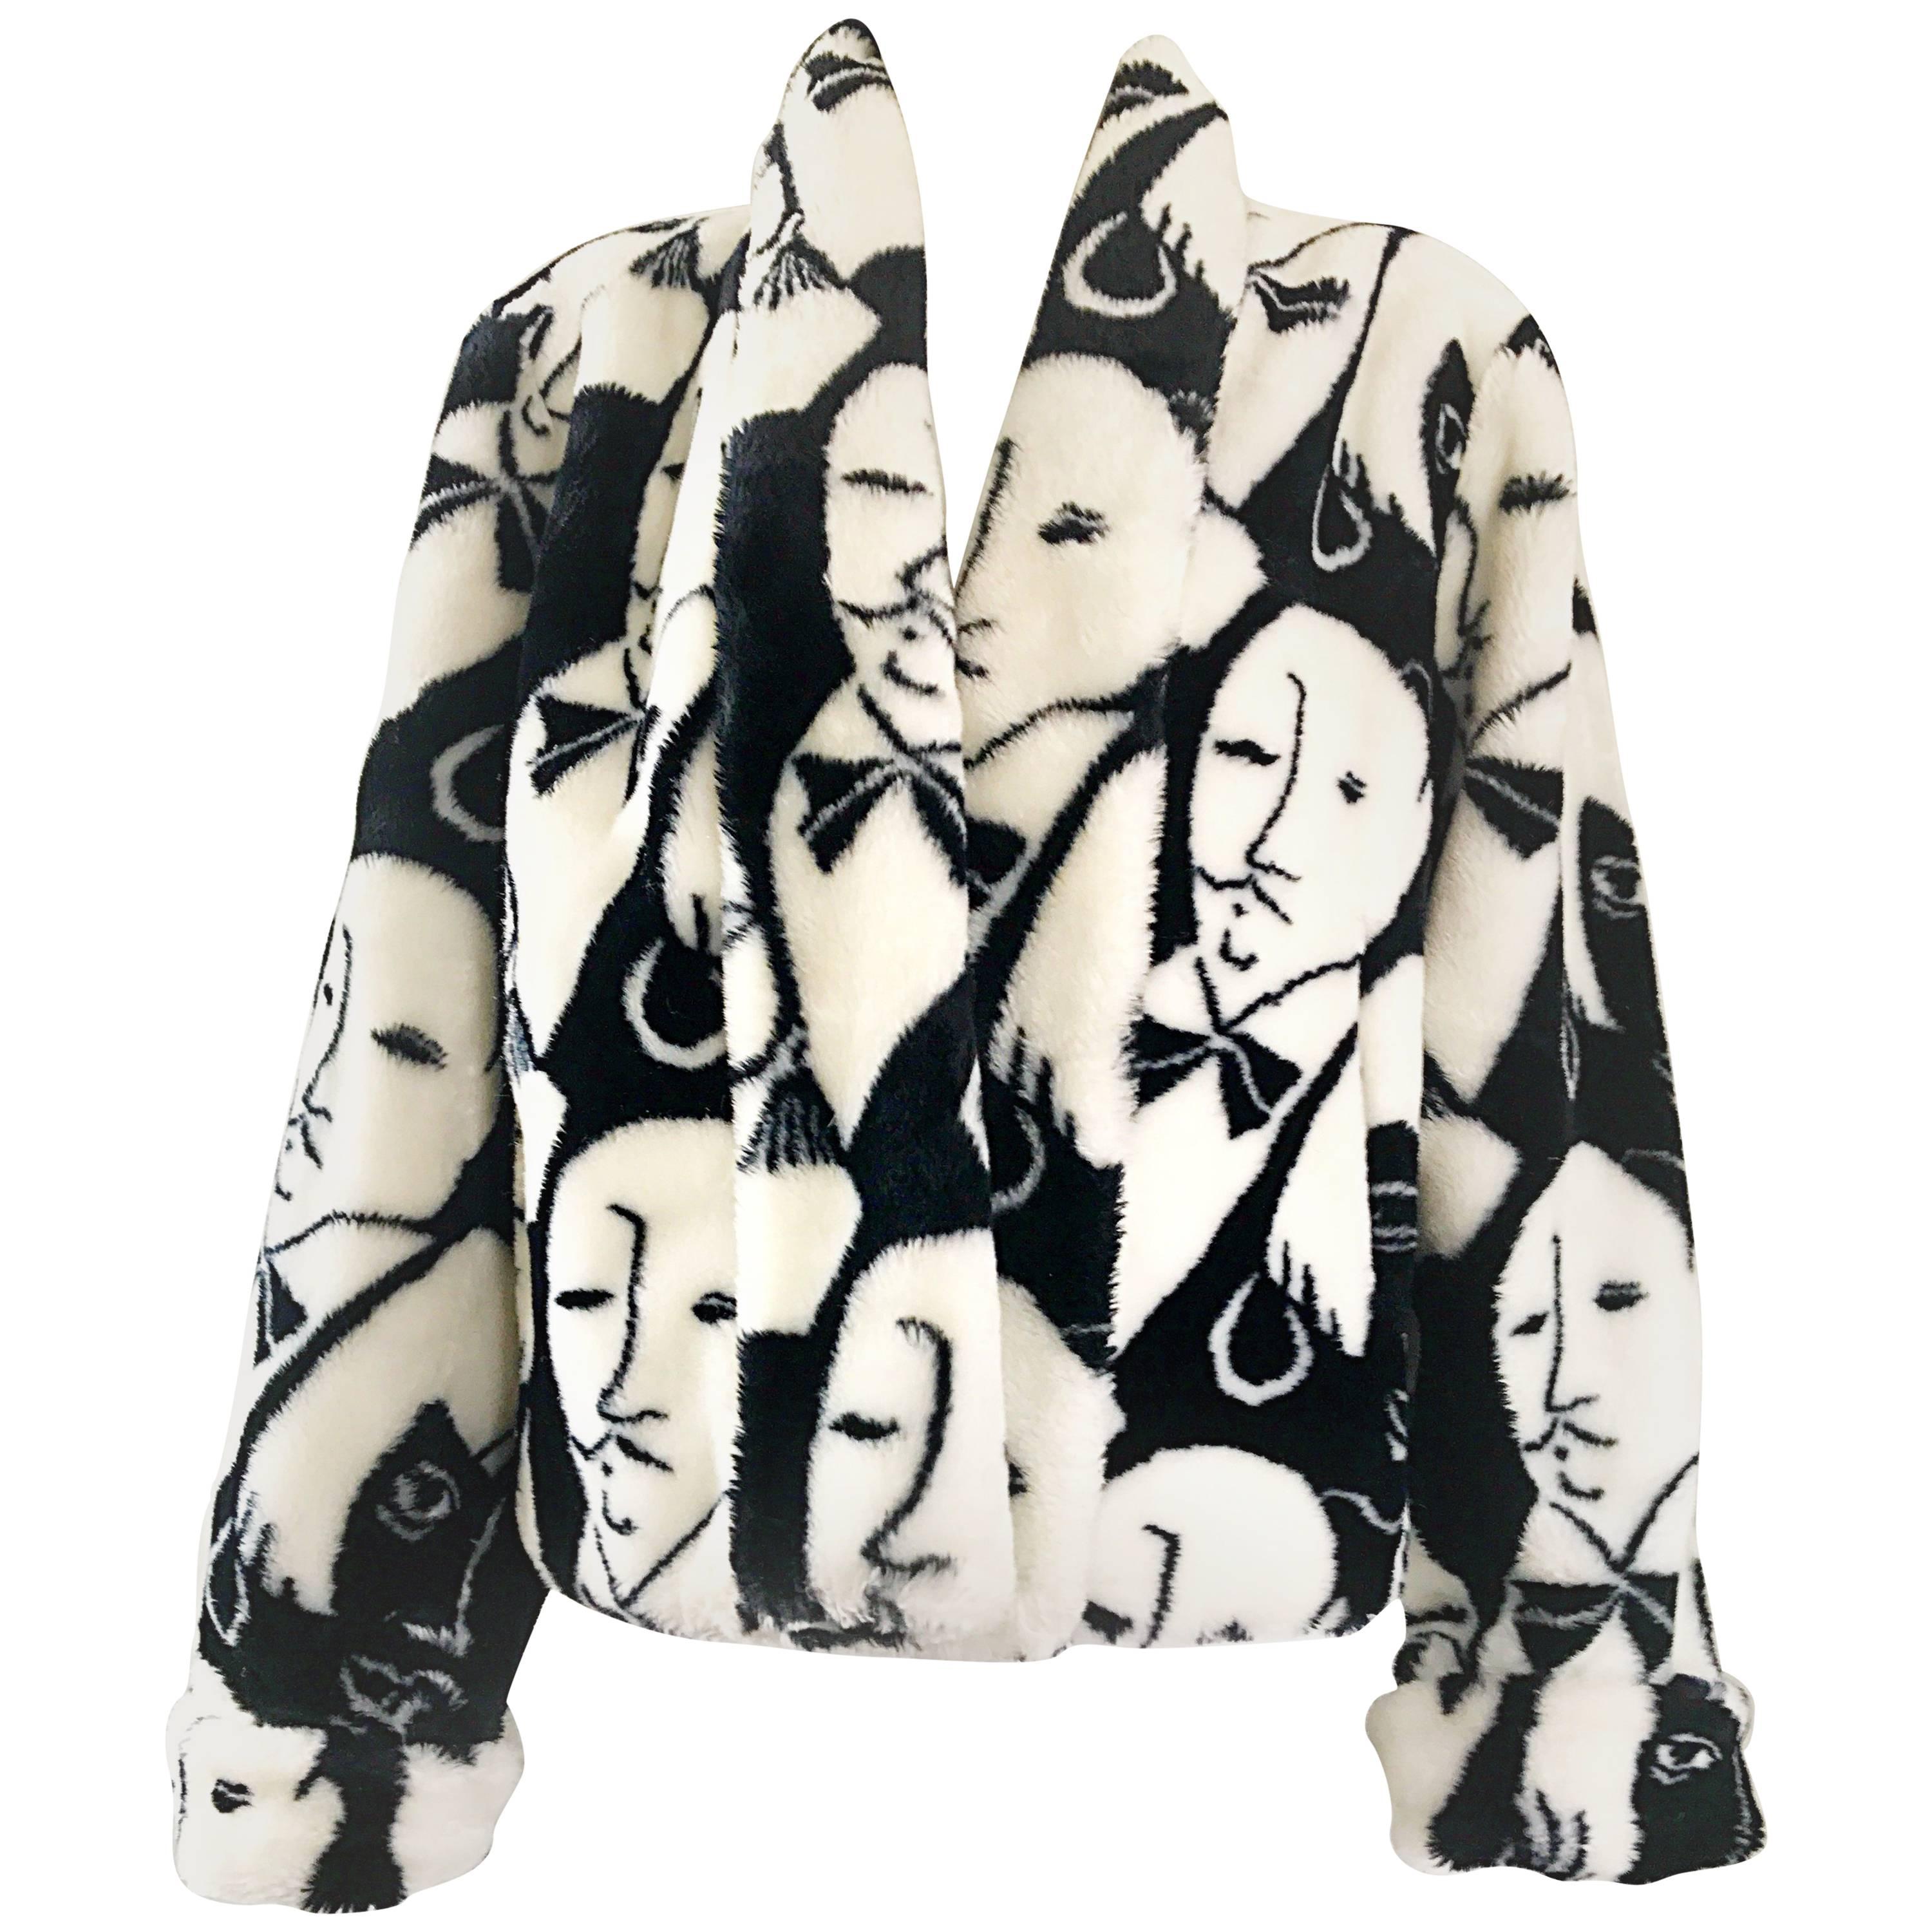 Rihanna's Vintage Picasso Esque Black and White Faux Fur Lush Face Jacket Coat  